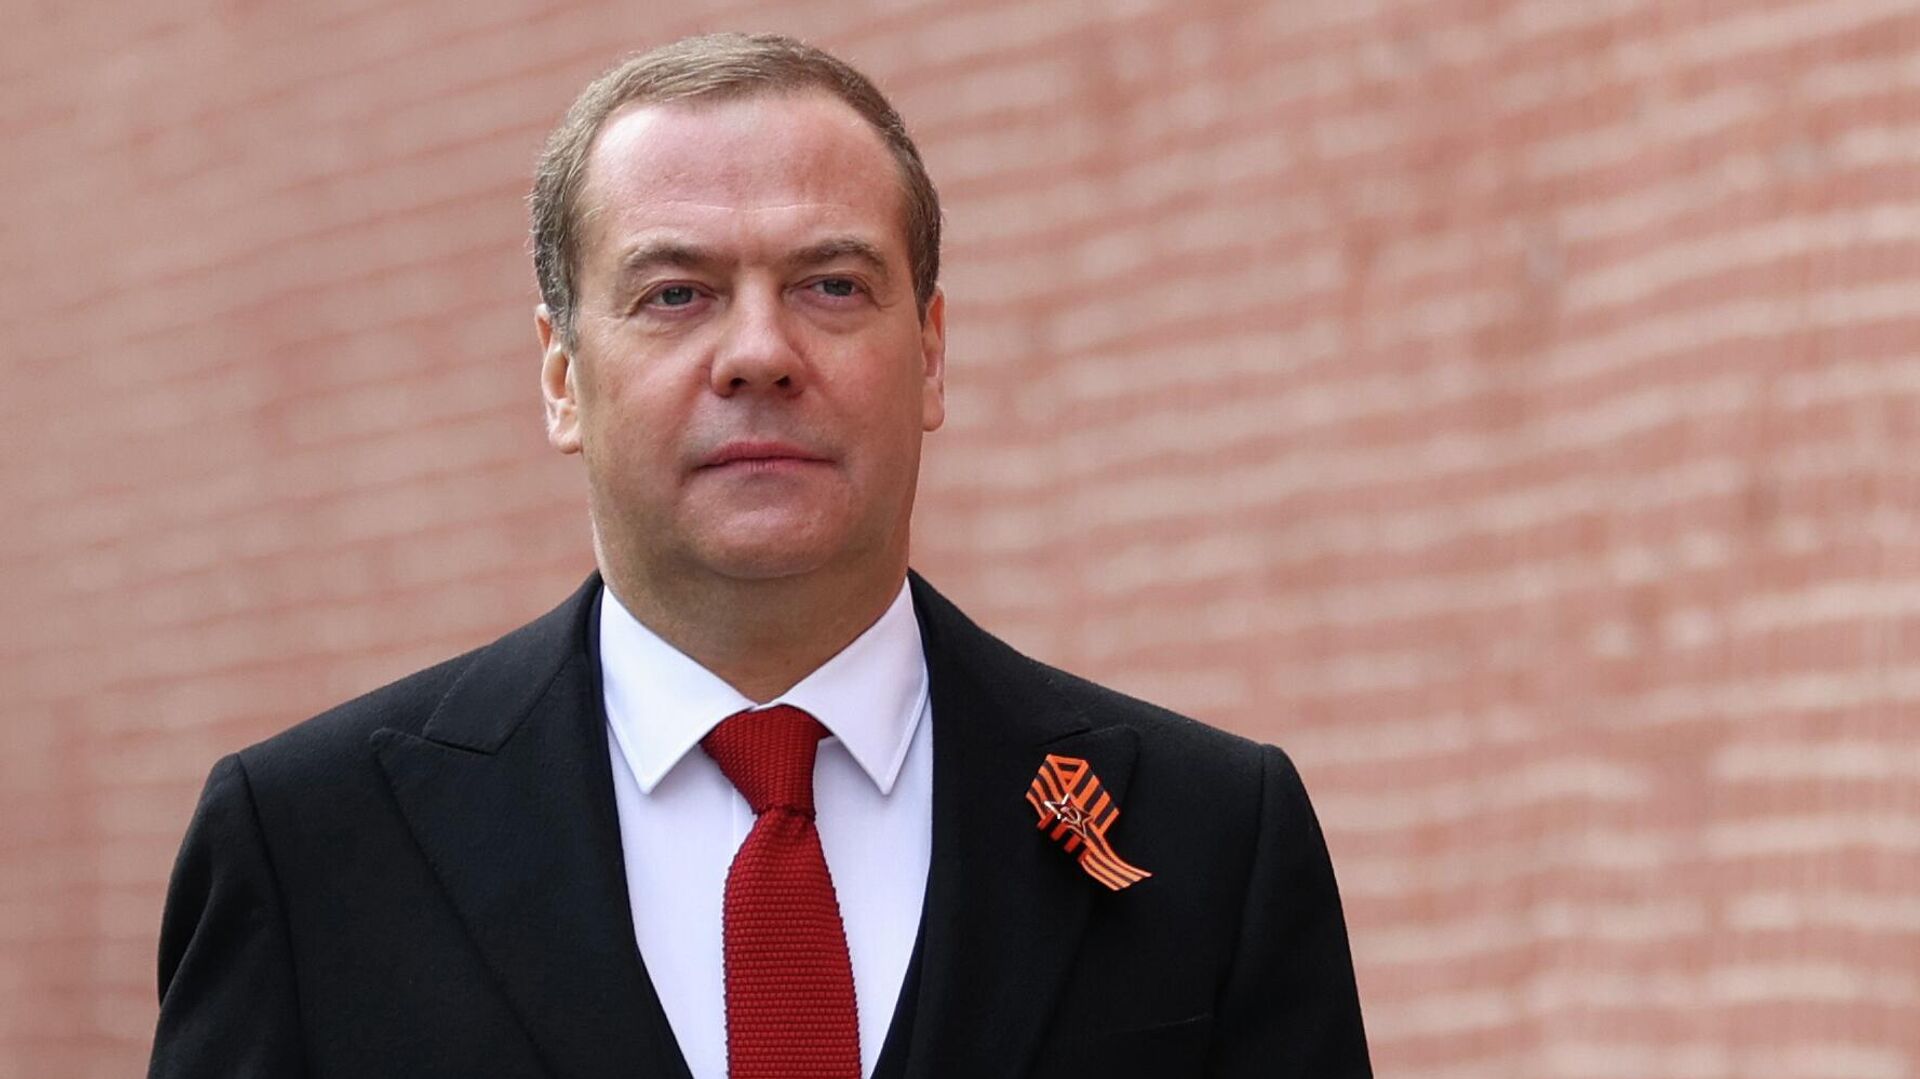 Phó Chủ tịch Hội đồng An ninh Nga Dmitry Medvedev trước lễ duyệt binh trên Quảng trường Đỏ kỷ niệm 77 năm chiến thắng trong Chiến tranh Vệ quốc Vĩ đại. - Sputnik Việt Nam, 1920, 19.01.2023